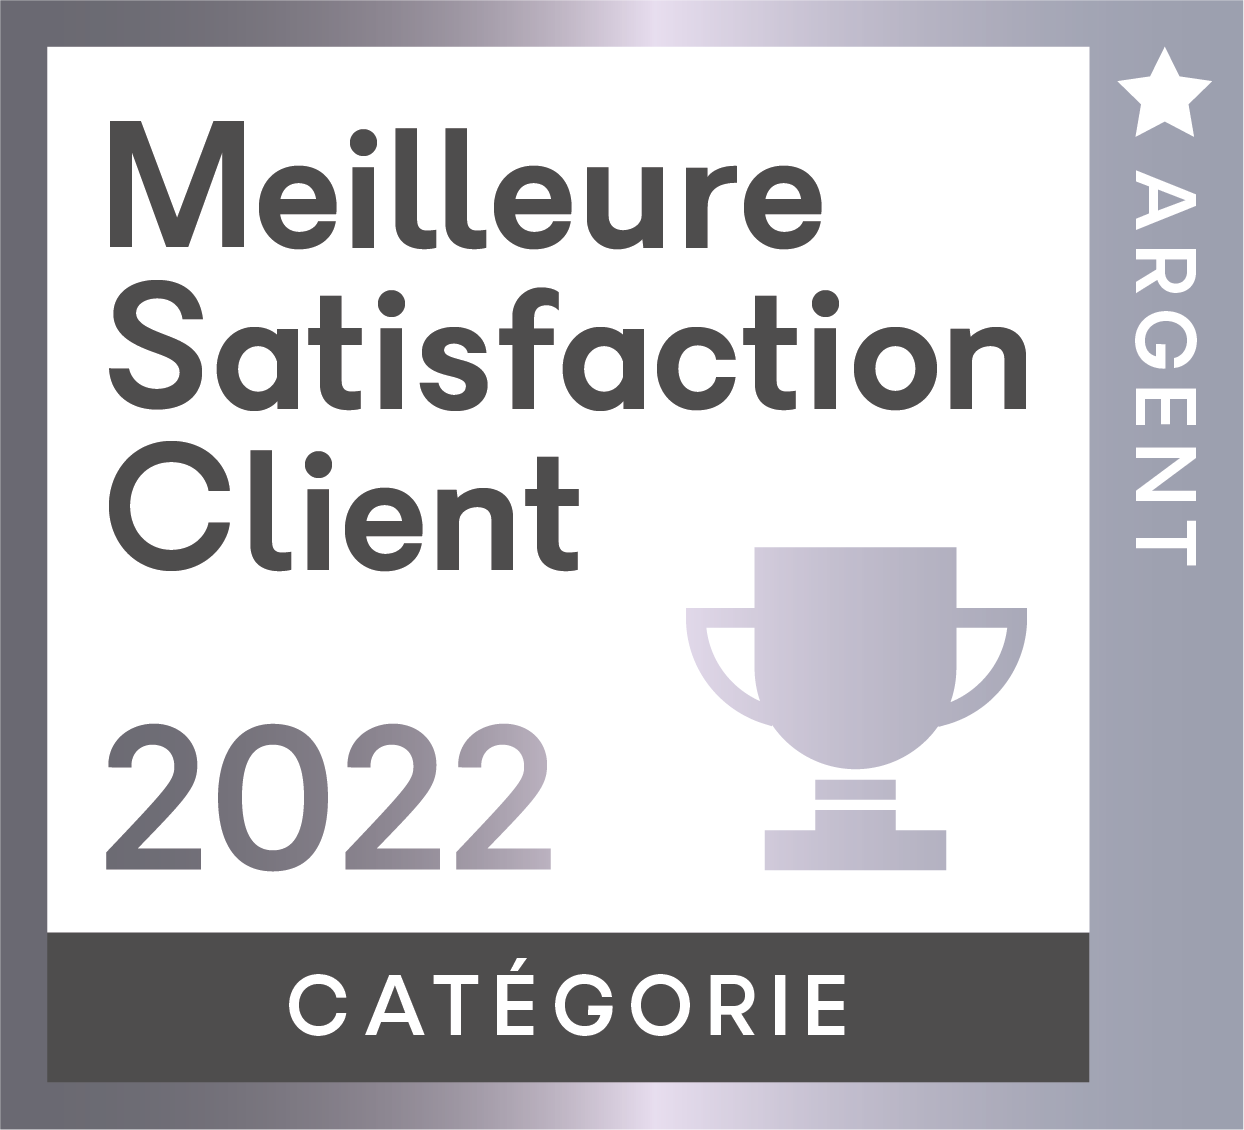 Argent_Cat_Meilleure_Satisfaction_Client_2022